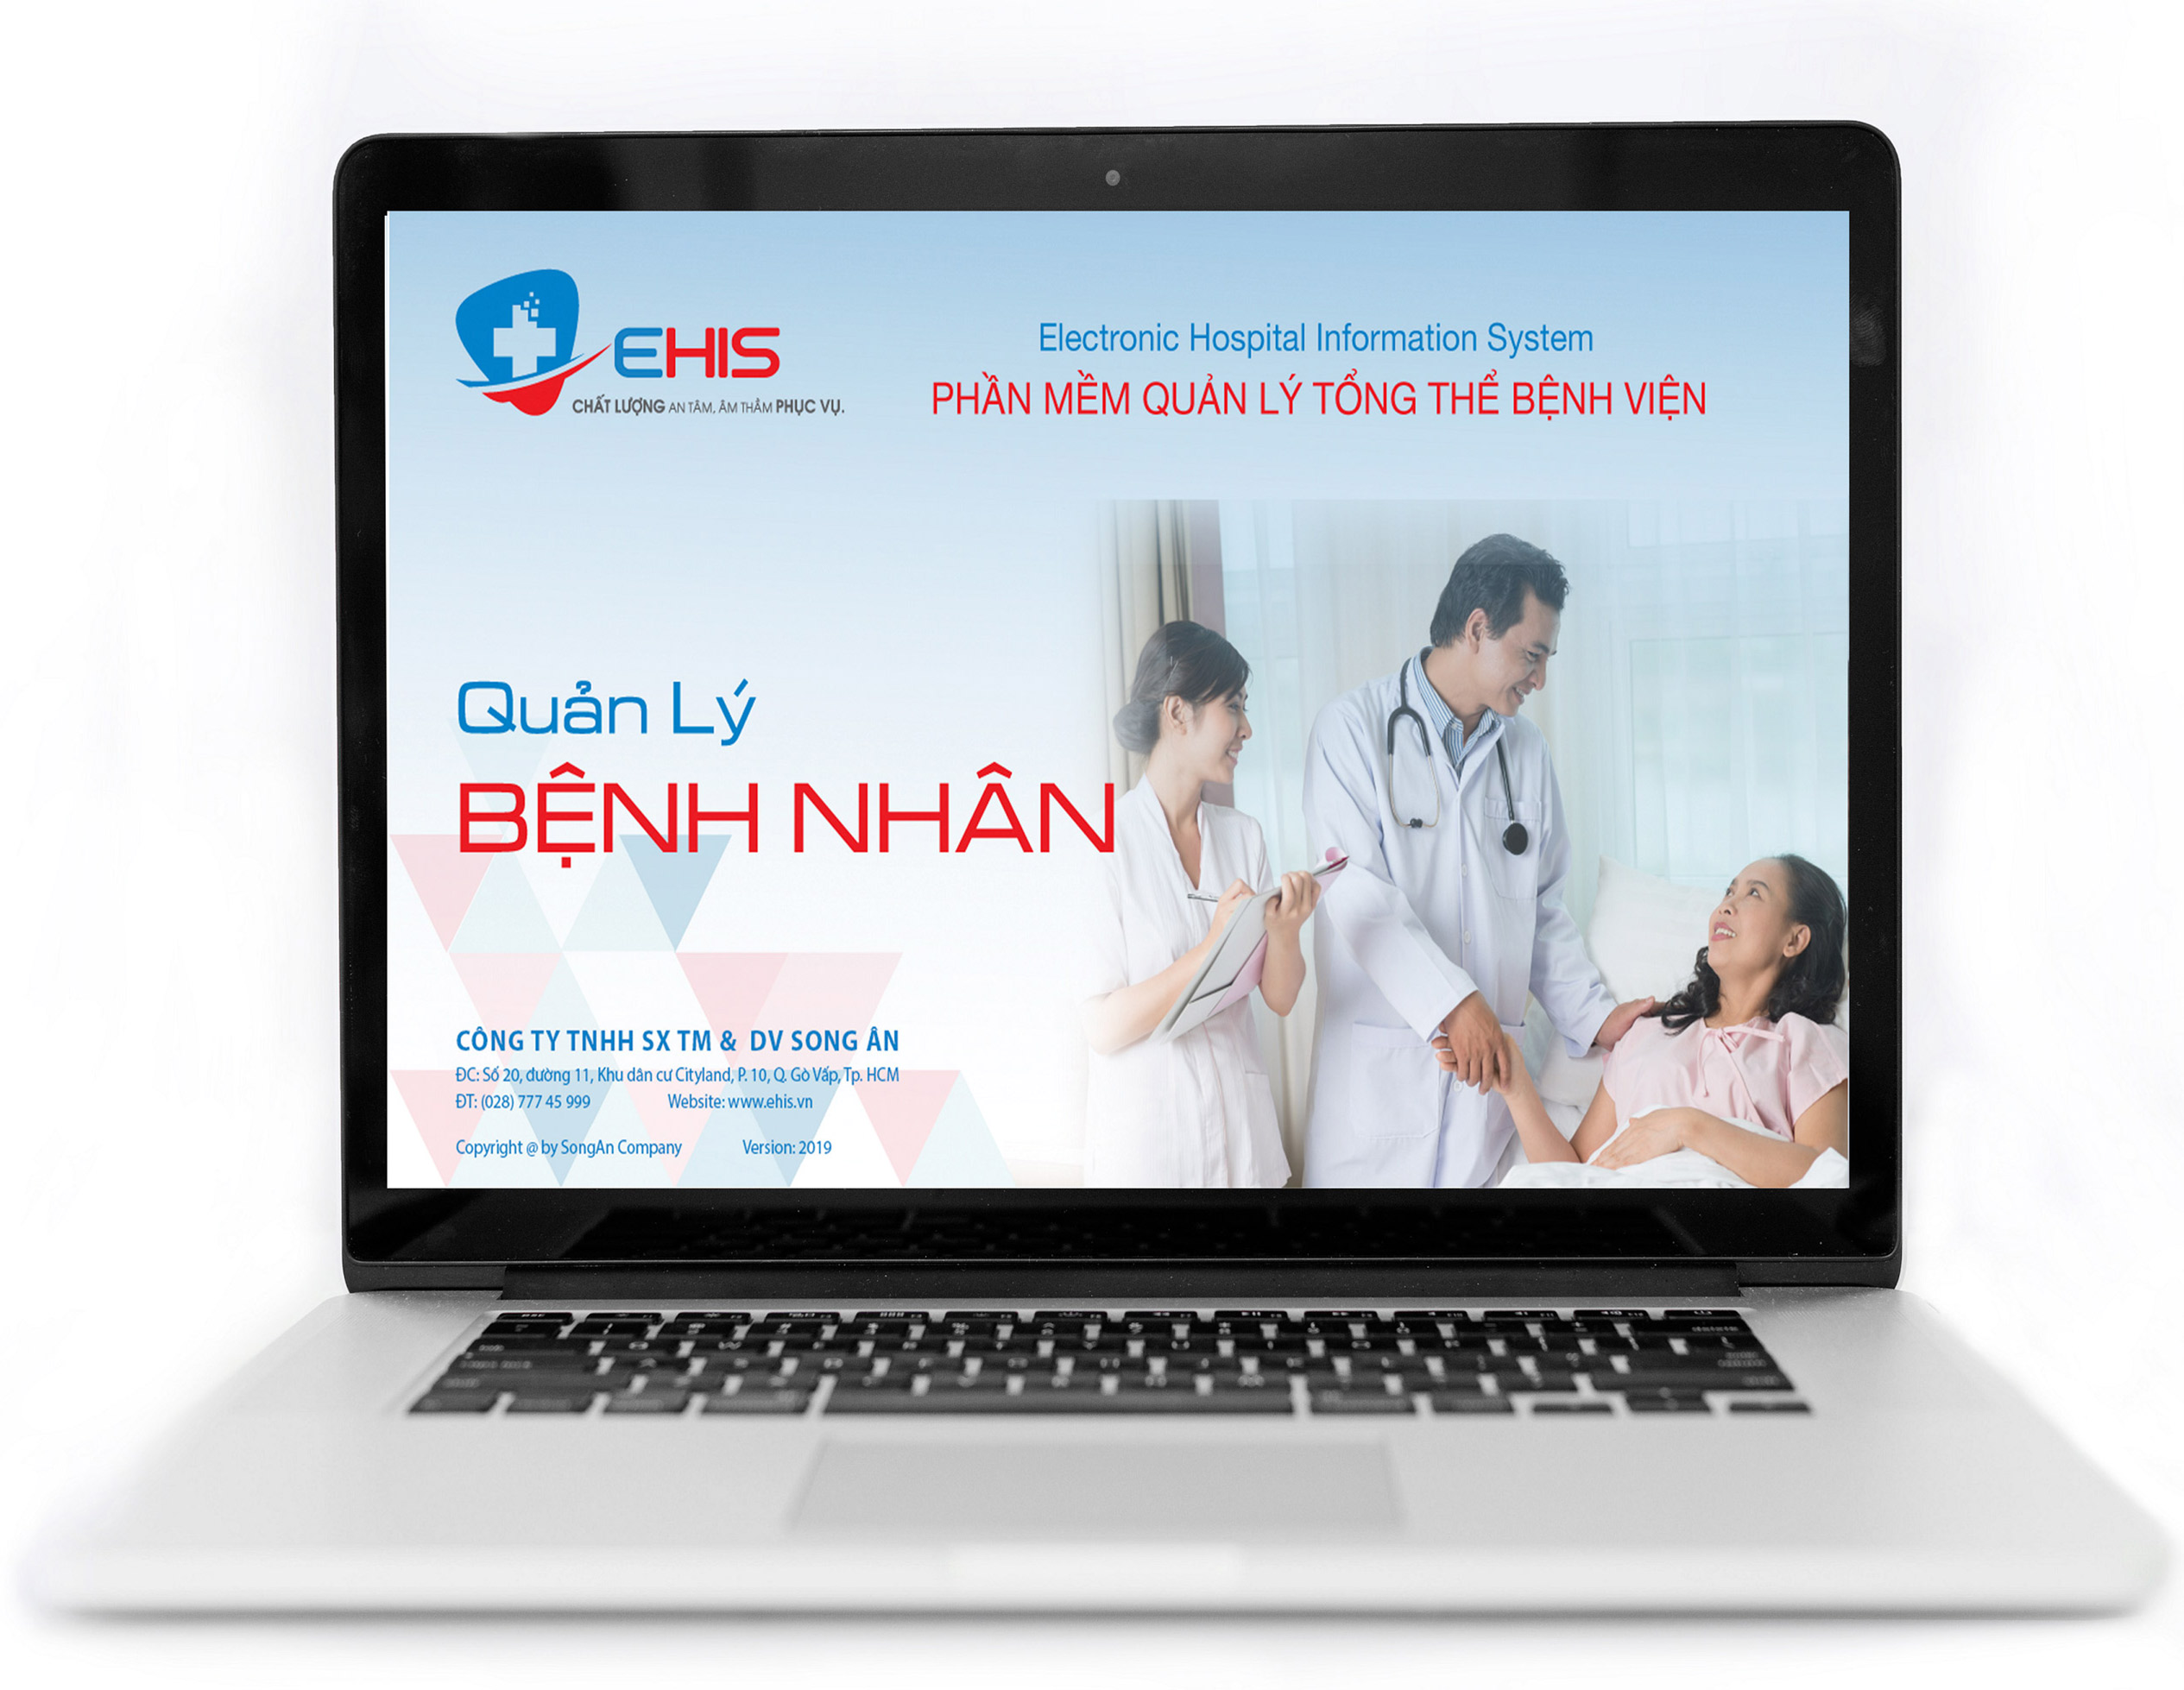 Phần mềm quản lý bệnh nhân Ehis